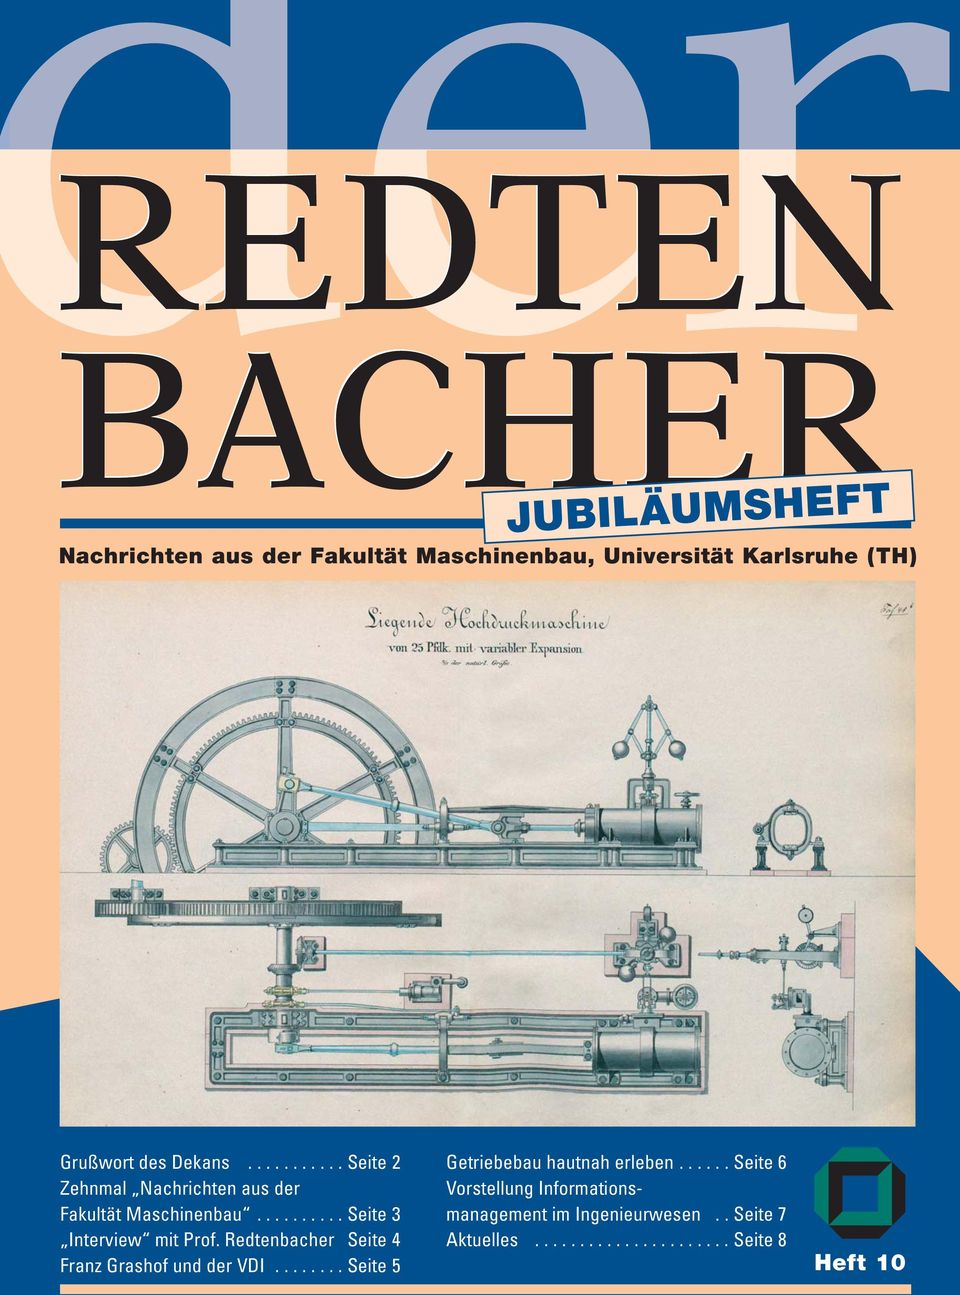 Redtenbacher Seite 4 Franz Grashof und der VDI........ Seite 5 Getriebebau hautnah erleben.